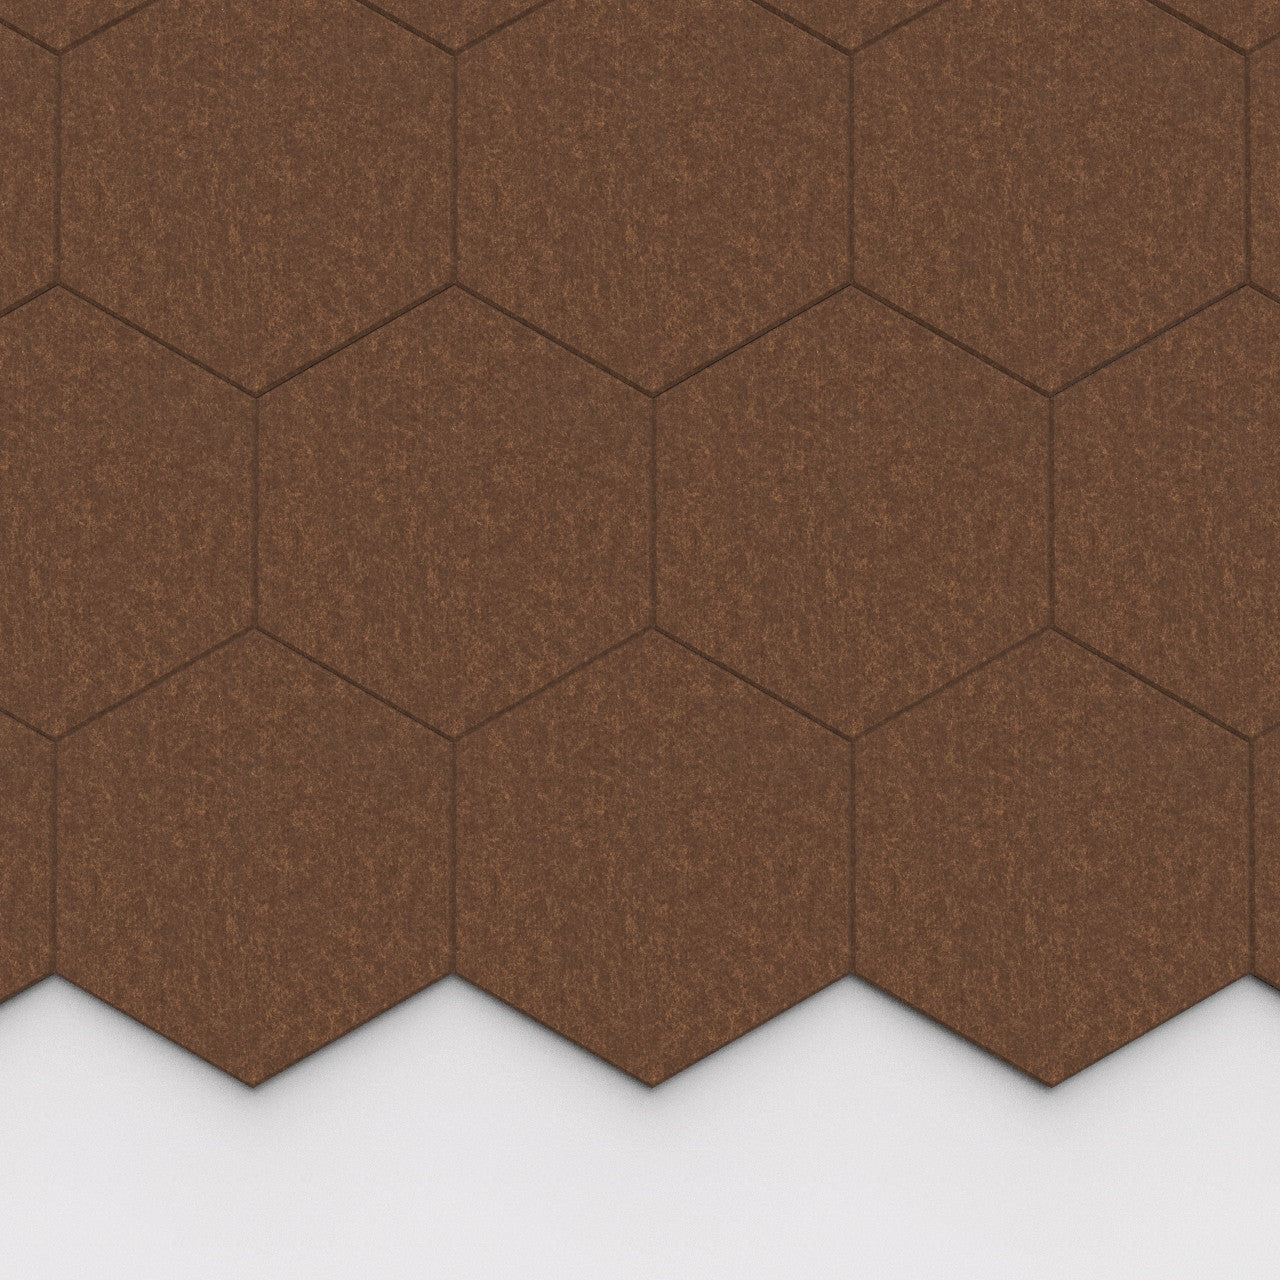 100% Recycled PET Felt Hexagon Plain Large Acoustic Tile Coconut | Plastock